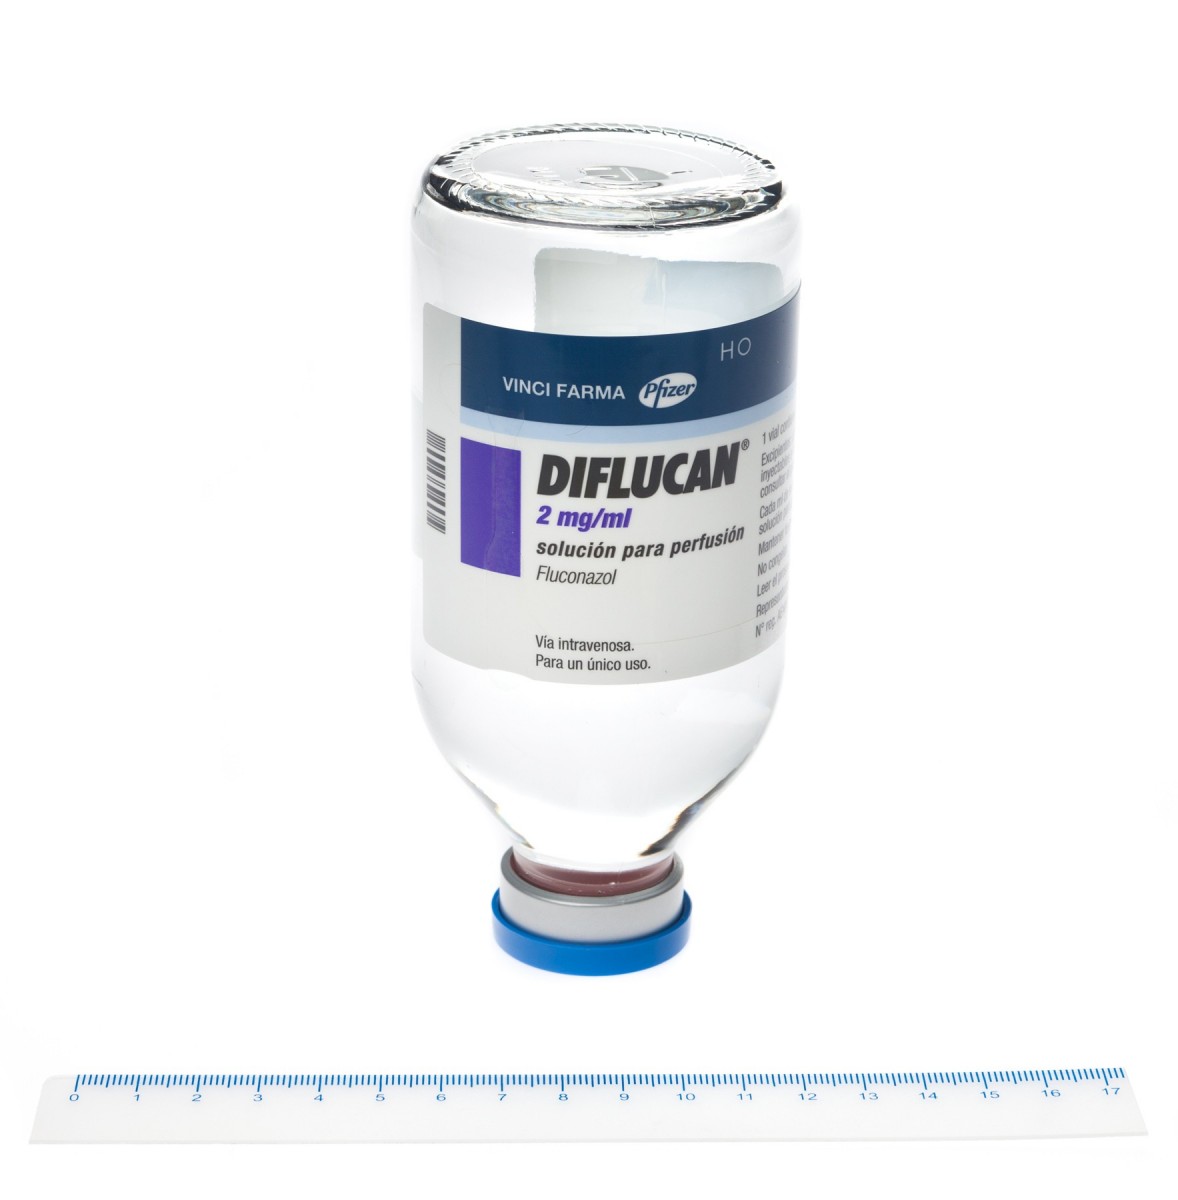 DIFLUCAN 2 mg/ml SOLUCION PARA PERFUSION ,  1 vial de 200 ml fotografía de la forma farmacéutica.